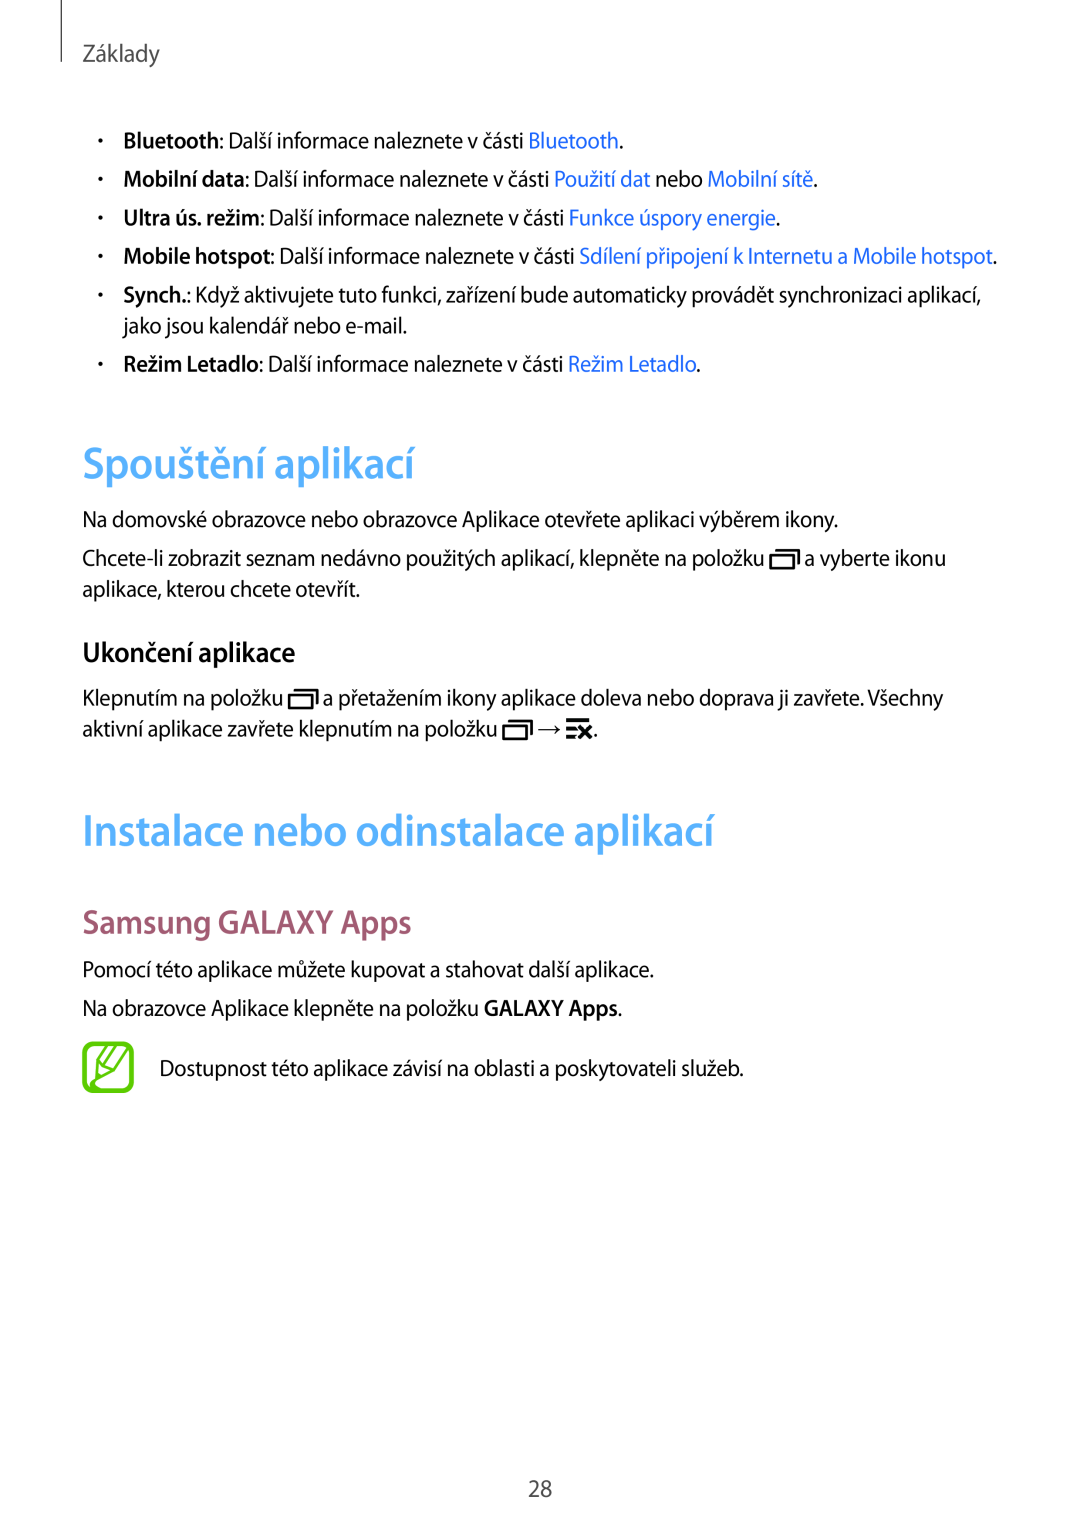 Samsung SM-J100HZBDXEH manual Spouštění aplikací, Instalace nebo odinstalace aplikací, Samsung GALAXY Apps, Základy 